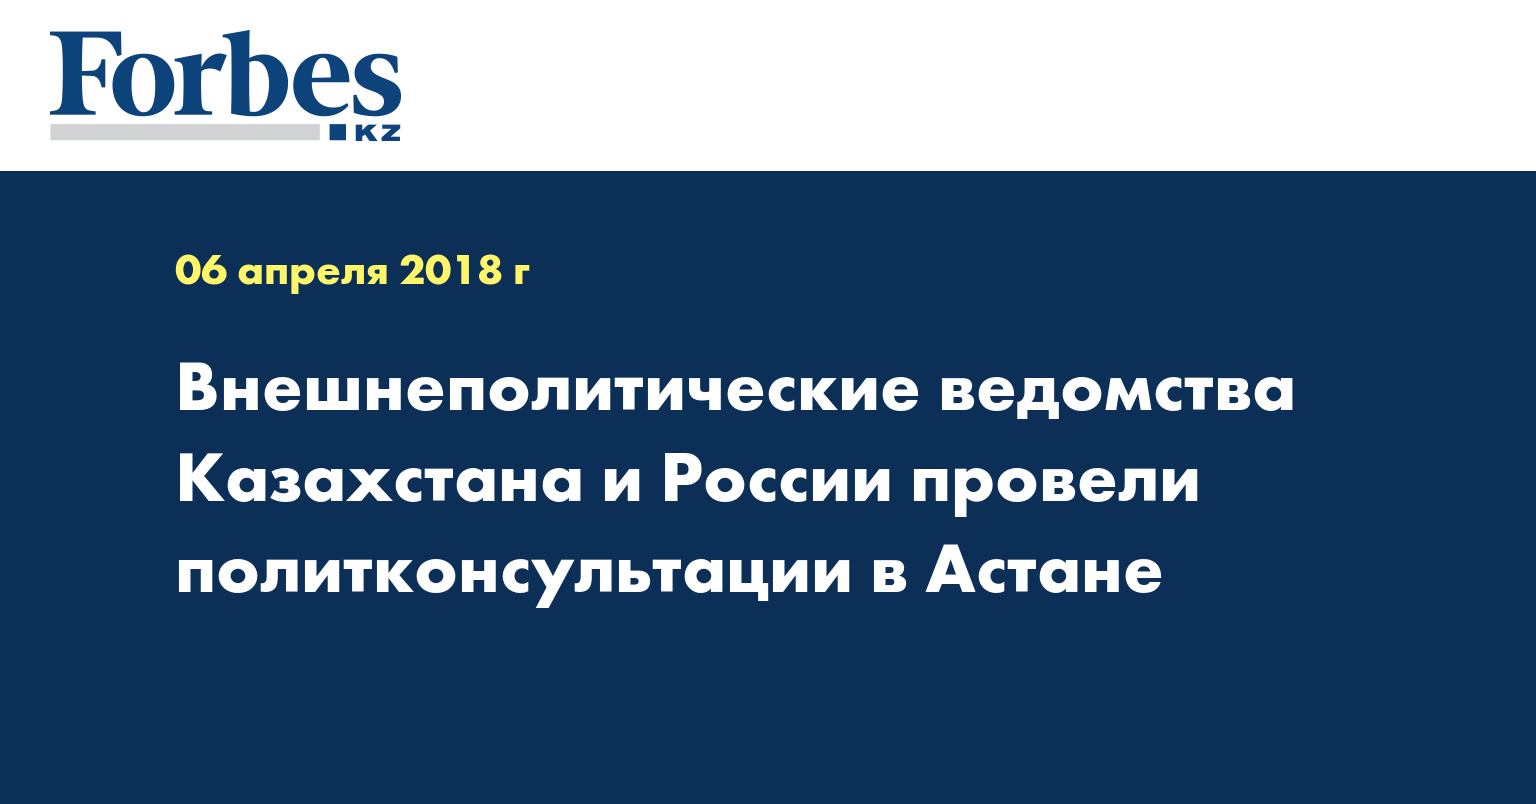 Внешнеполитические ведомства Казахстана и России провели политконсультации в Астане